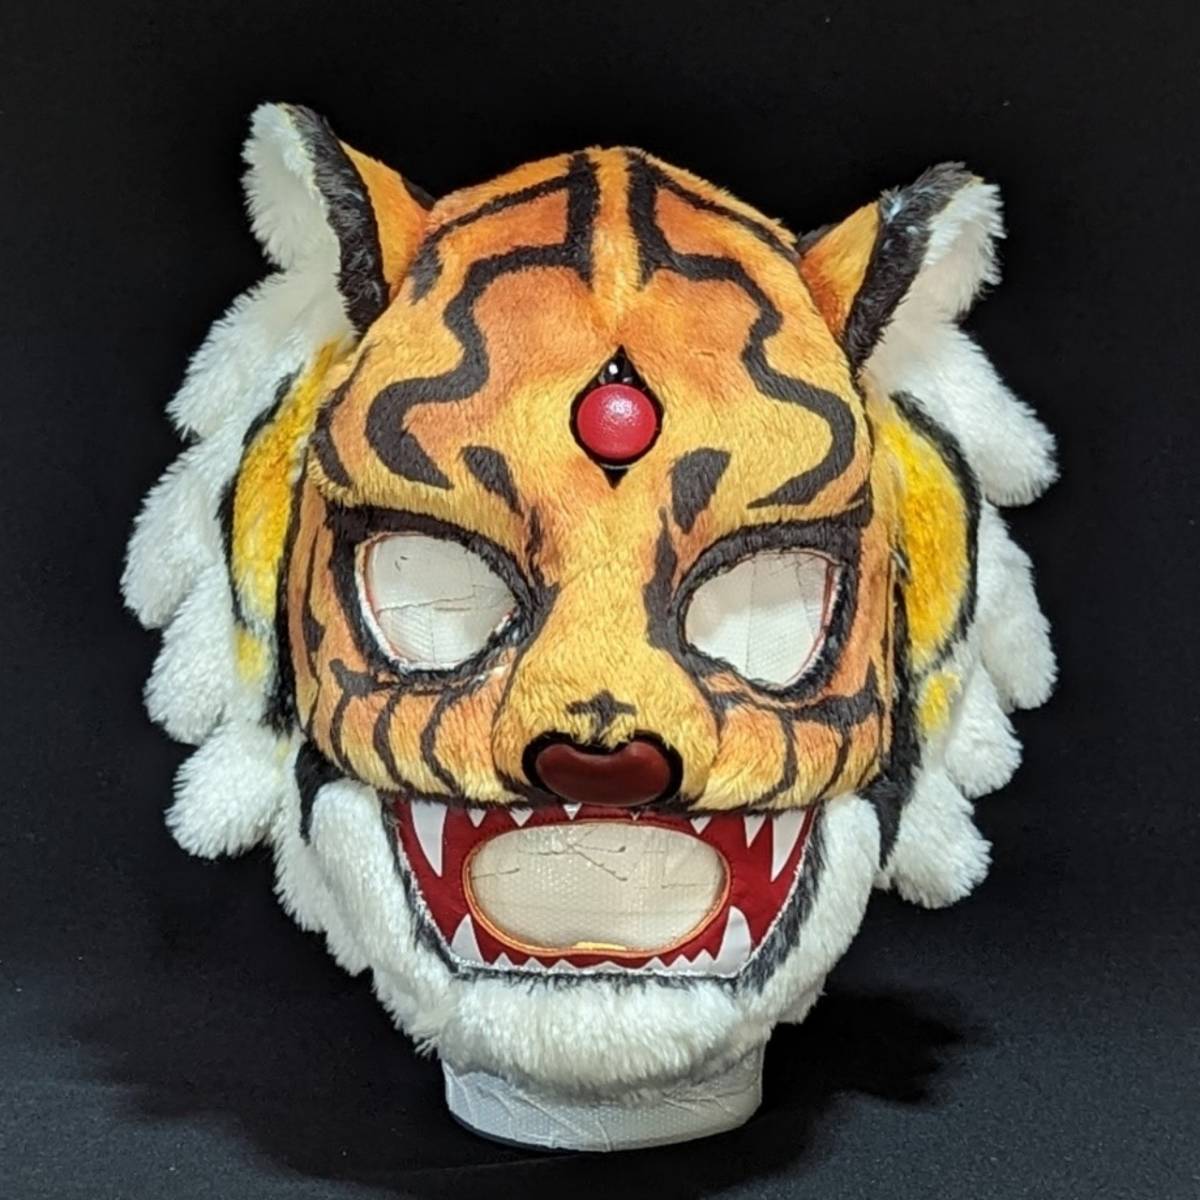 【佐山サトル 公認】TIGER ARTS 初代タイガーマスク「ぬいぐるみ」4枚目 タイガー・アーツ 【新商品】